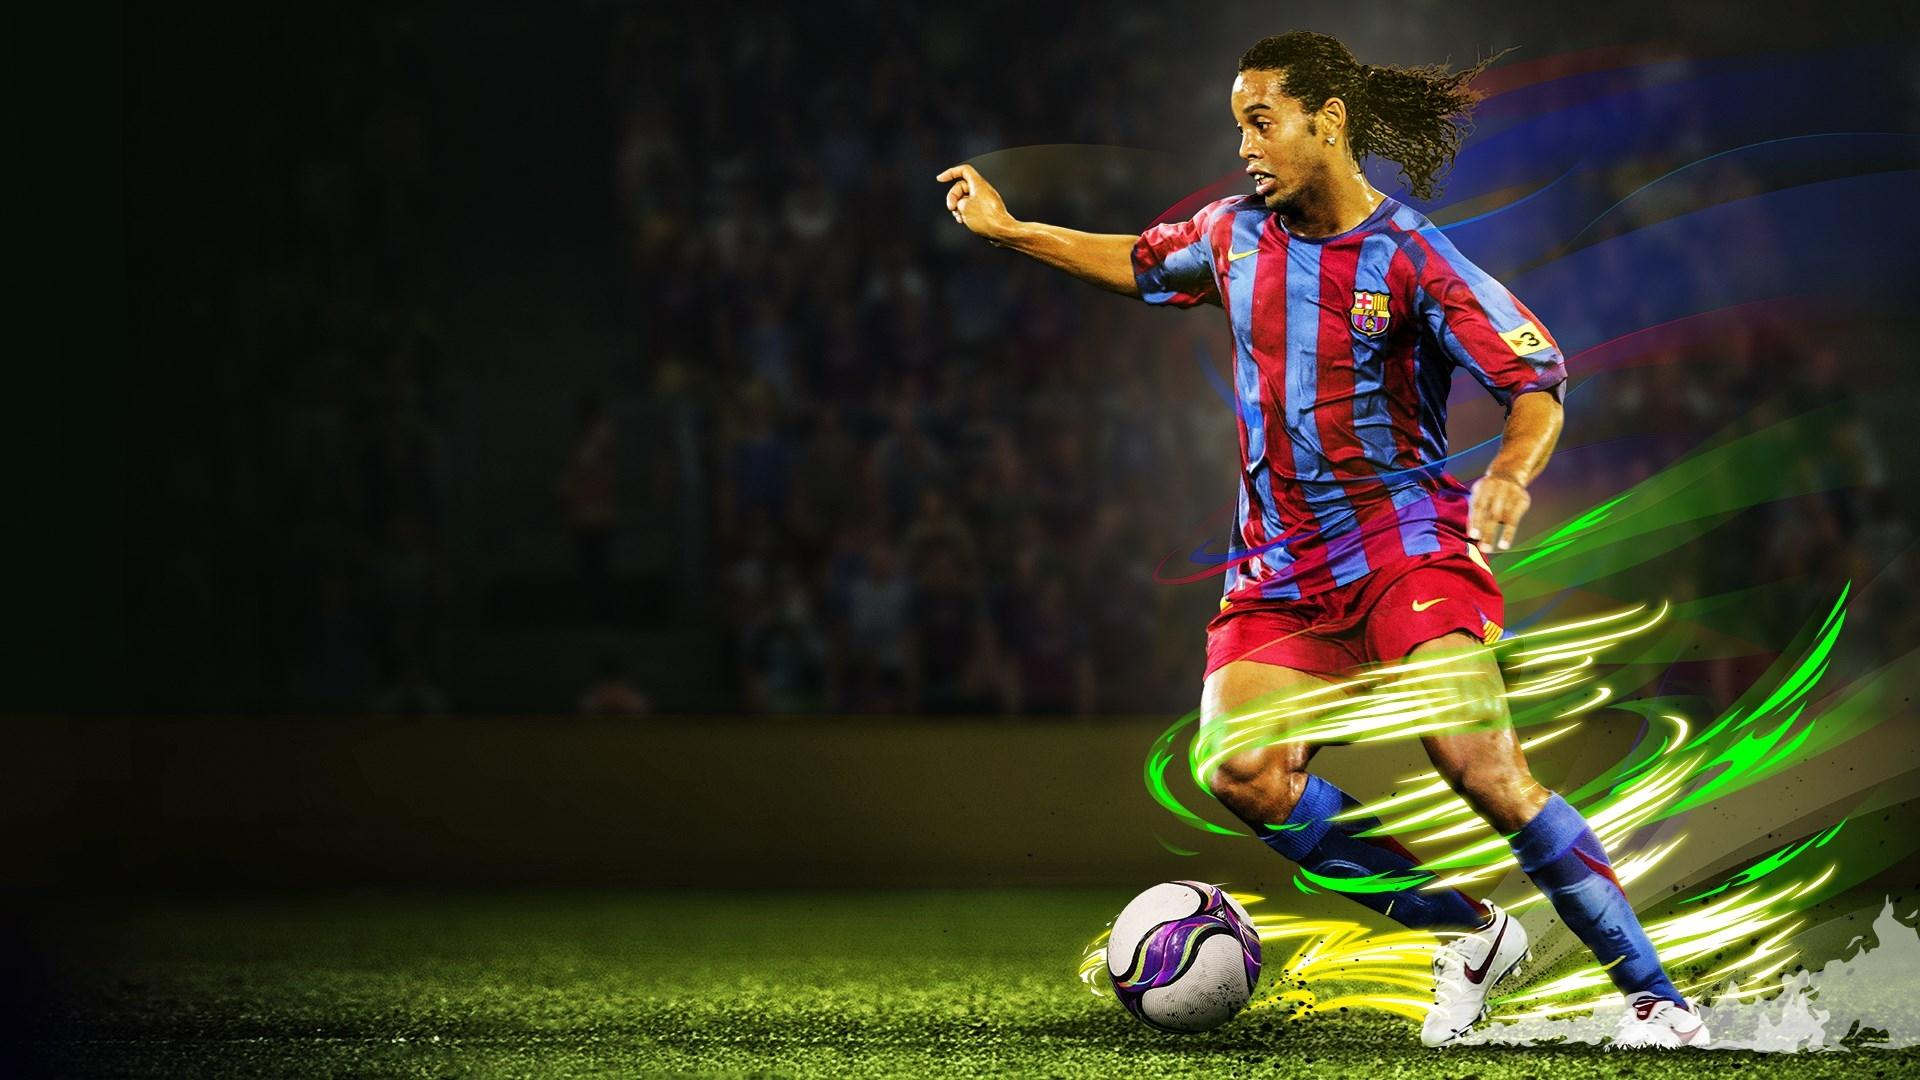 Ronaldinho In eFootball Pro Evolution Soccer 2020 1080P